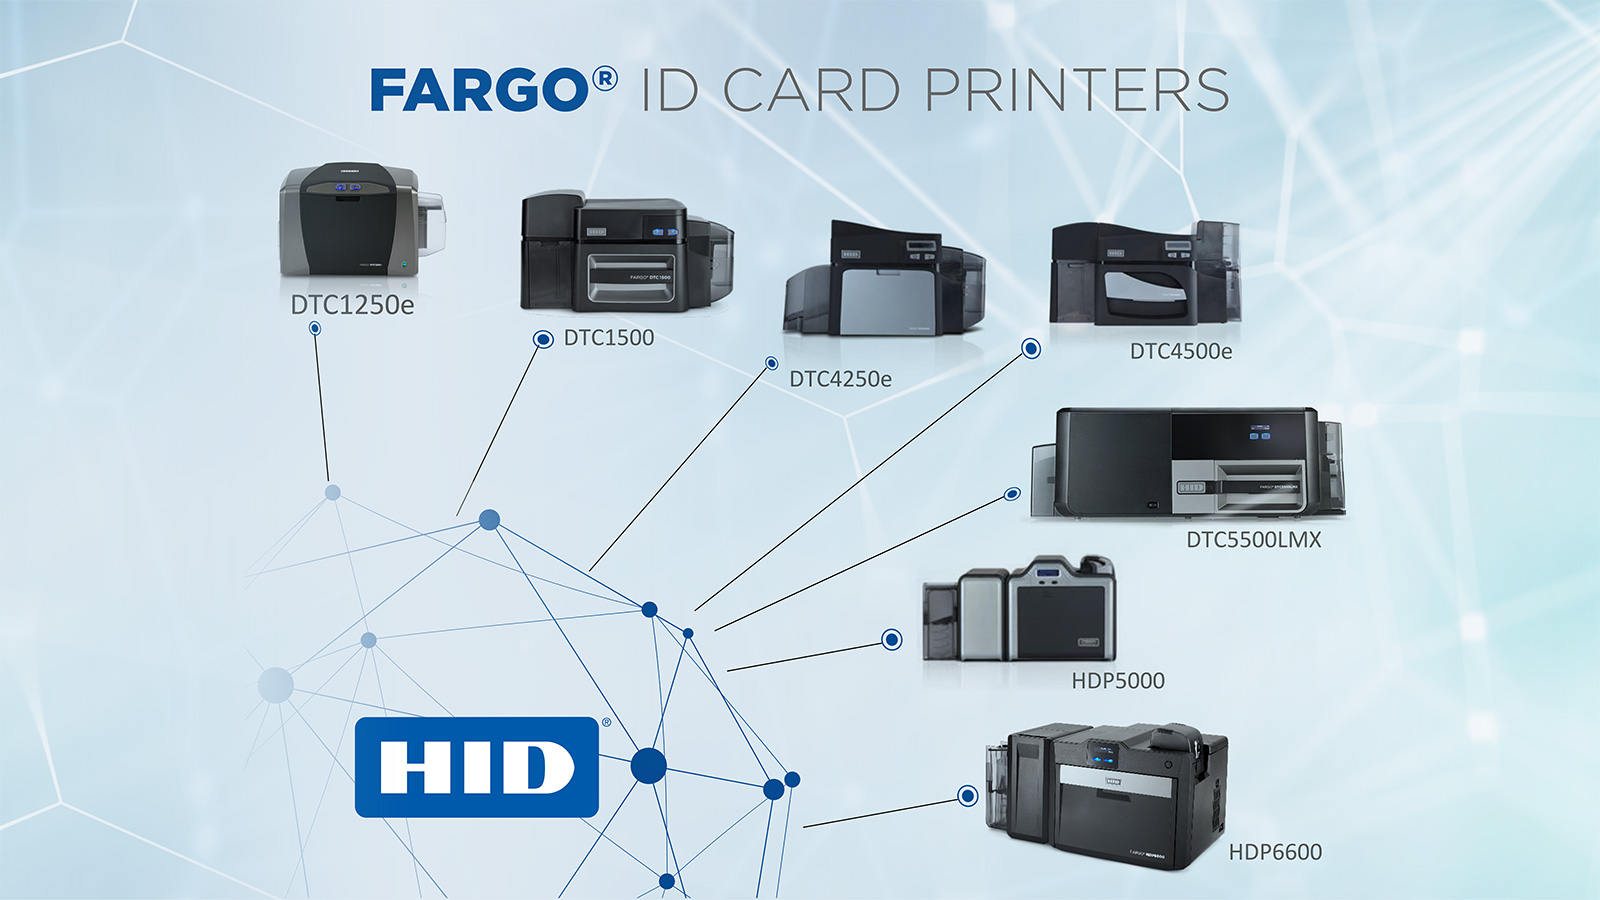 FARGO ID Card Printer Systems